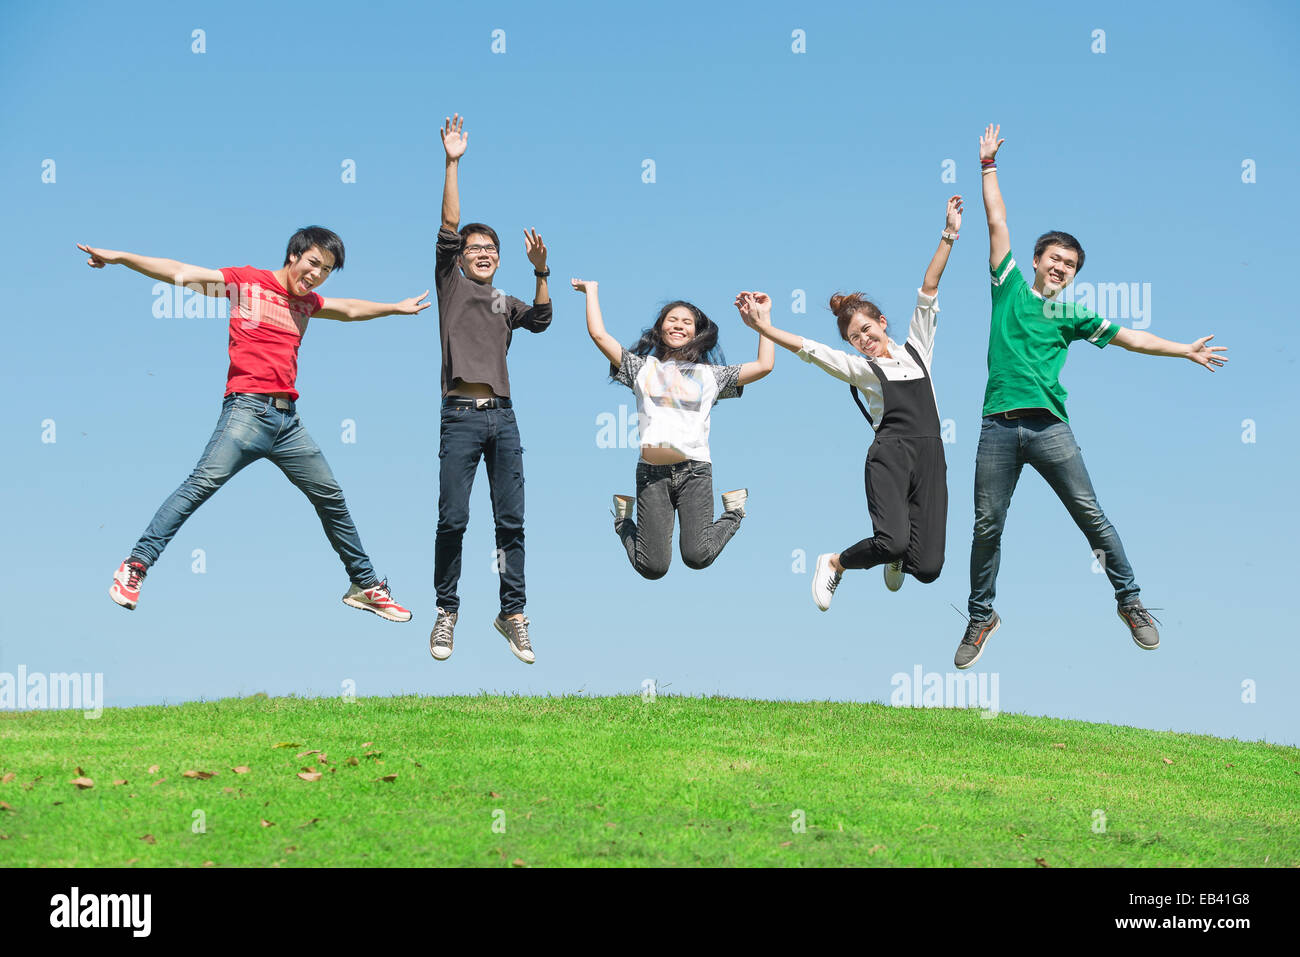 Verano, vacaciones, vacaciones, gente feliz concepto - grupo de amigos saltando sobre el parque Foto de stock